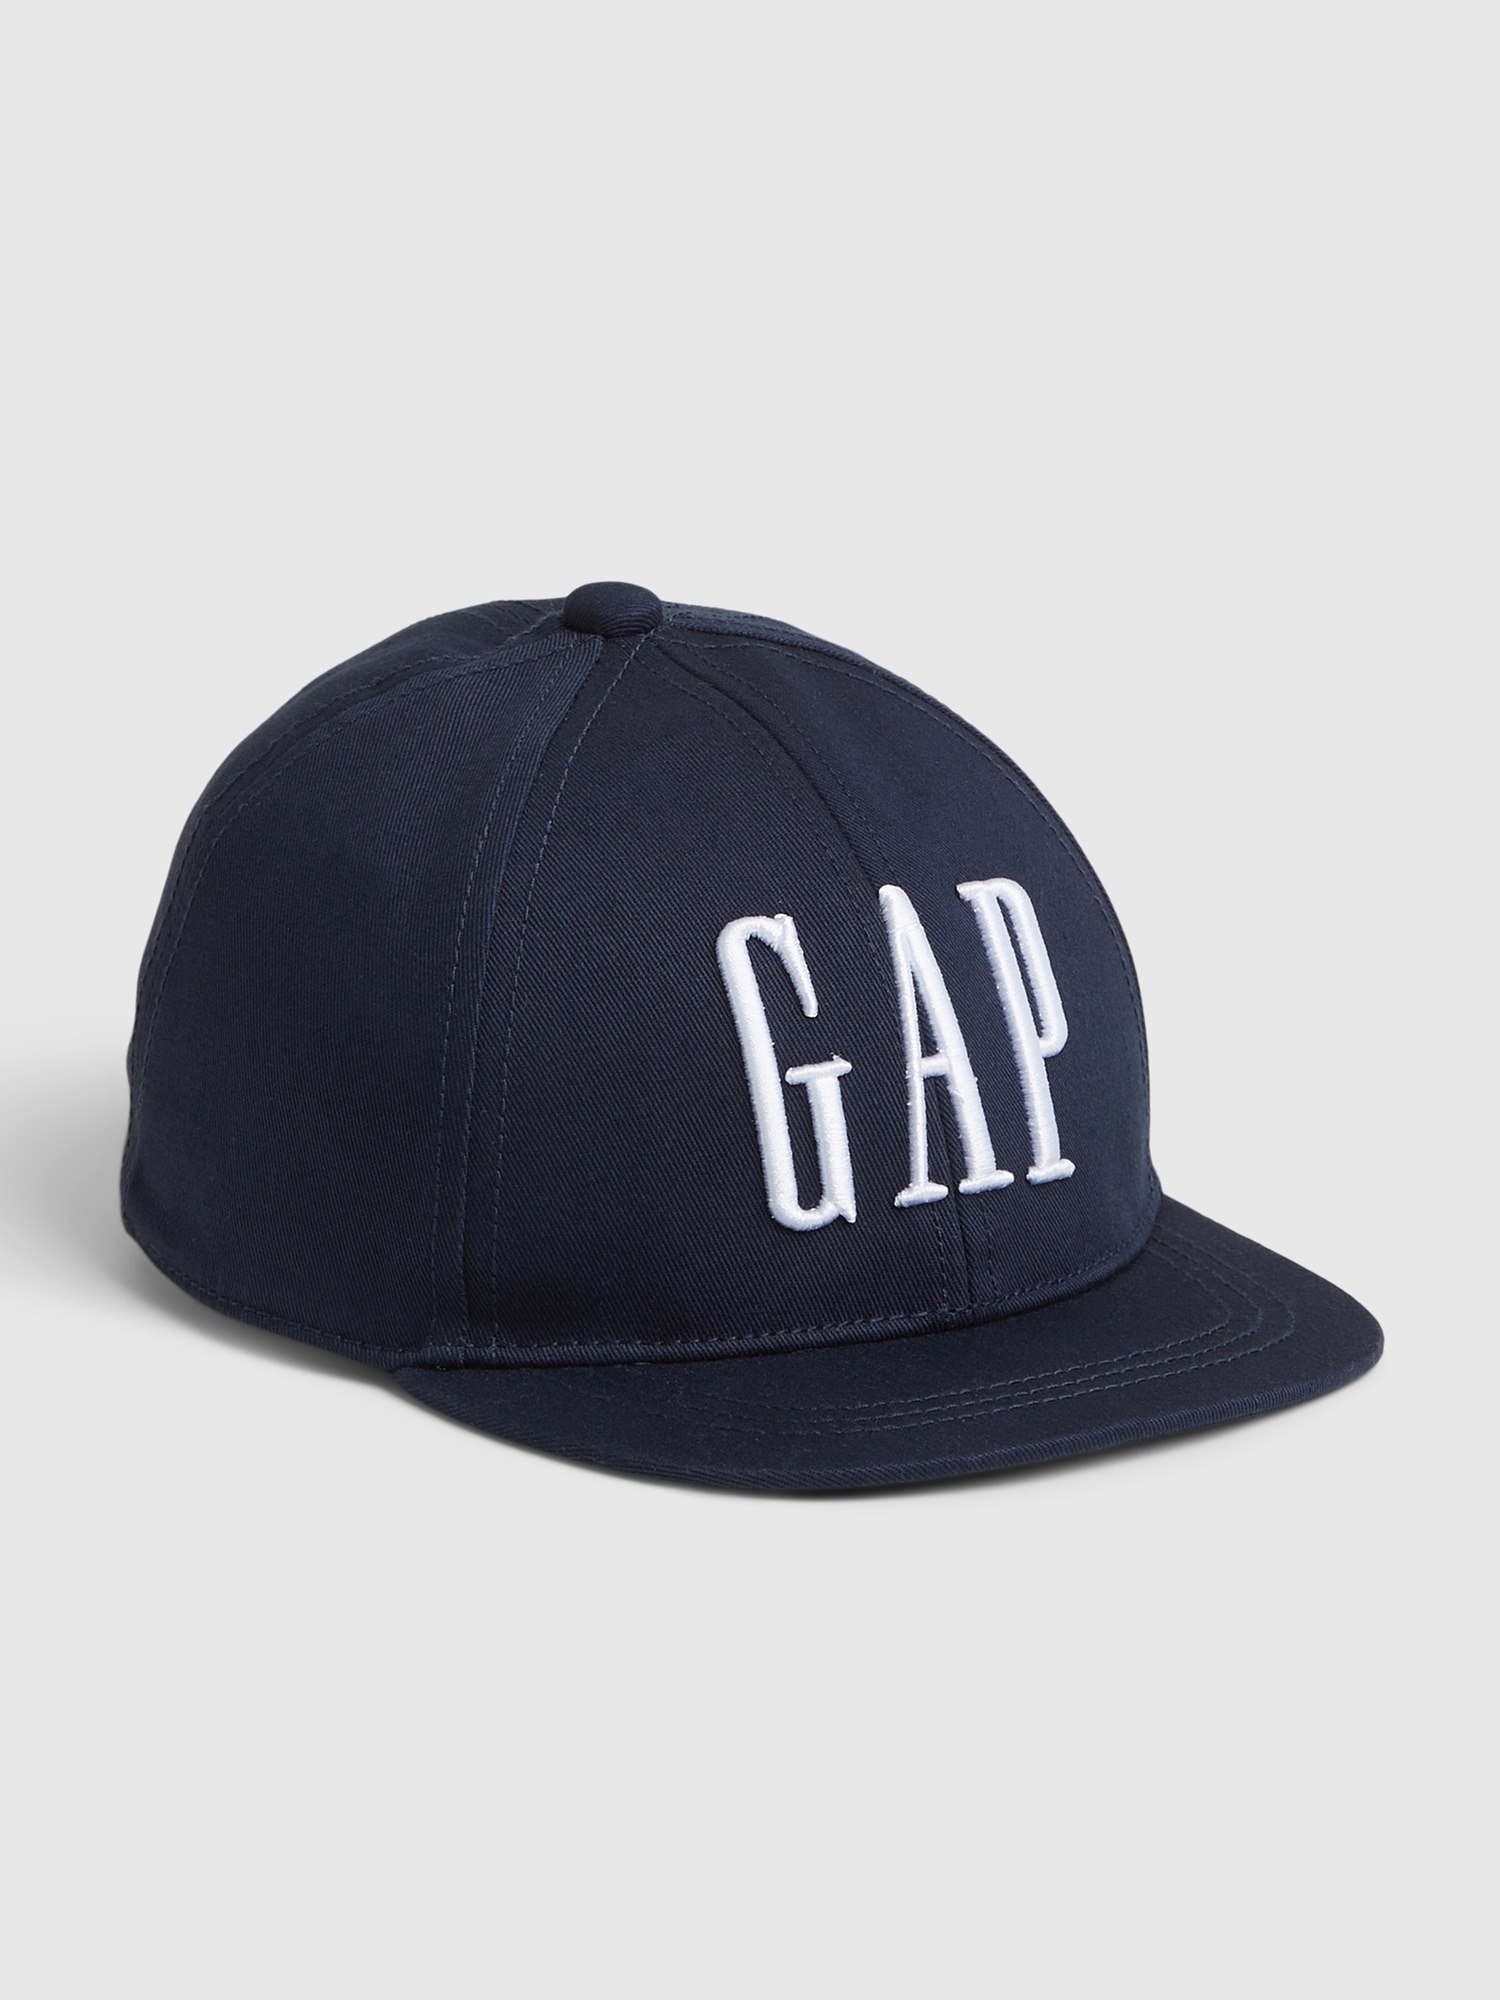 Gap Kids' Toddler  Logo Baseball Hat In Navy Blue